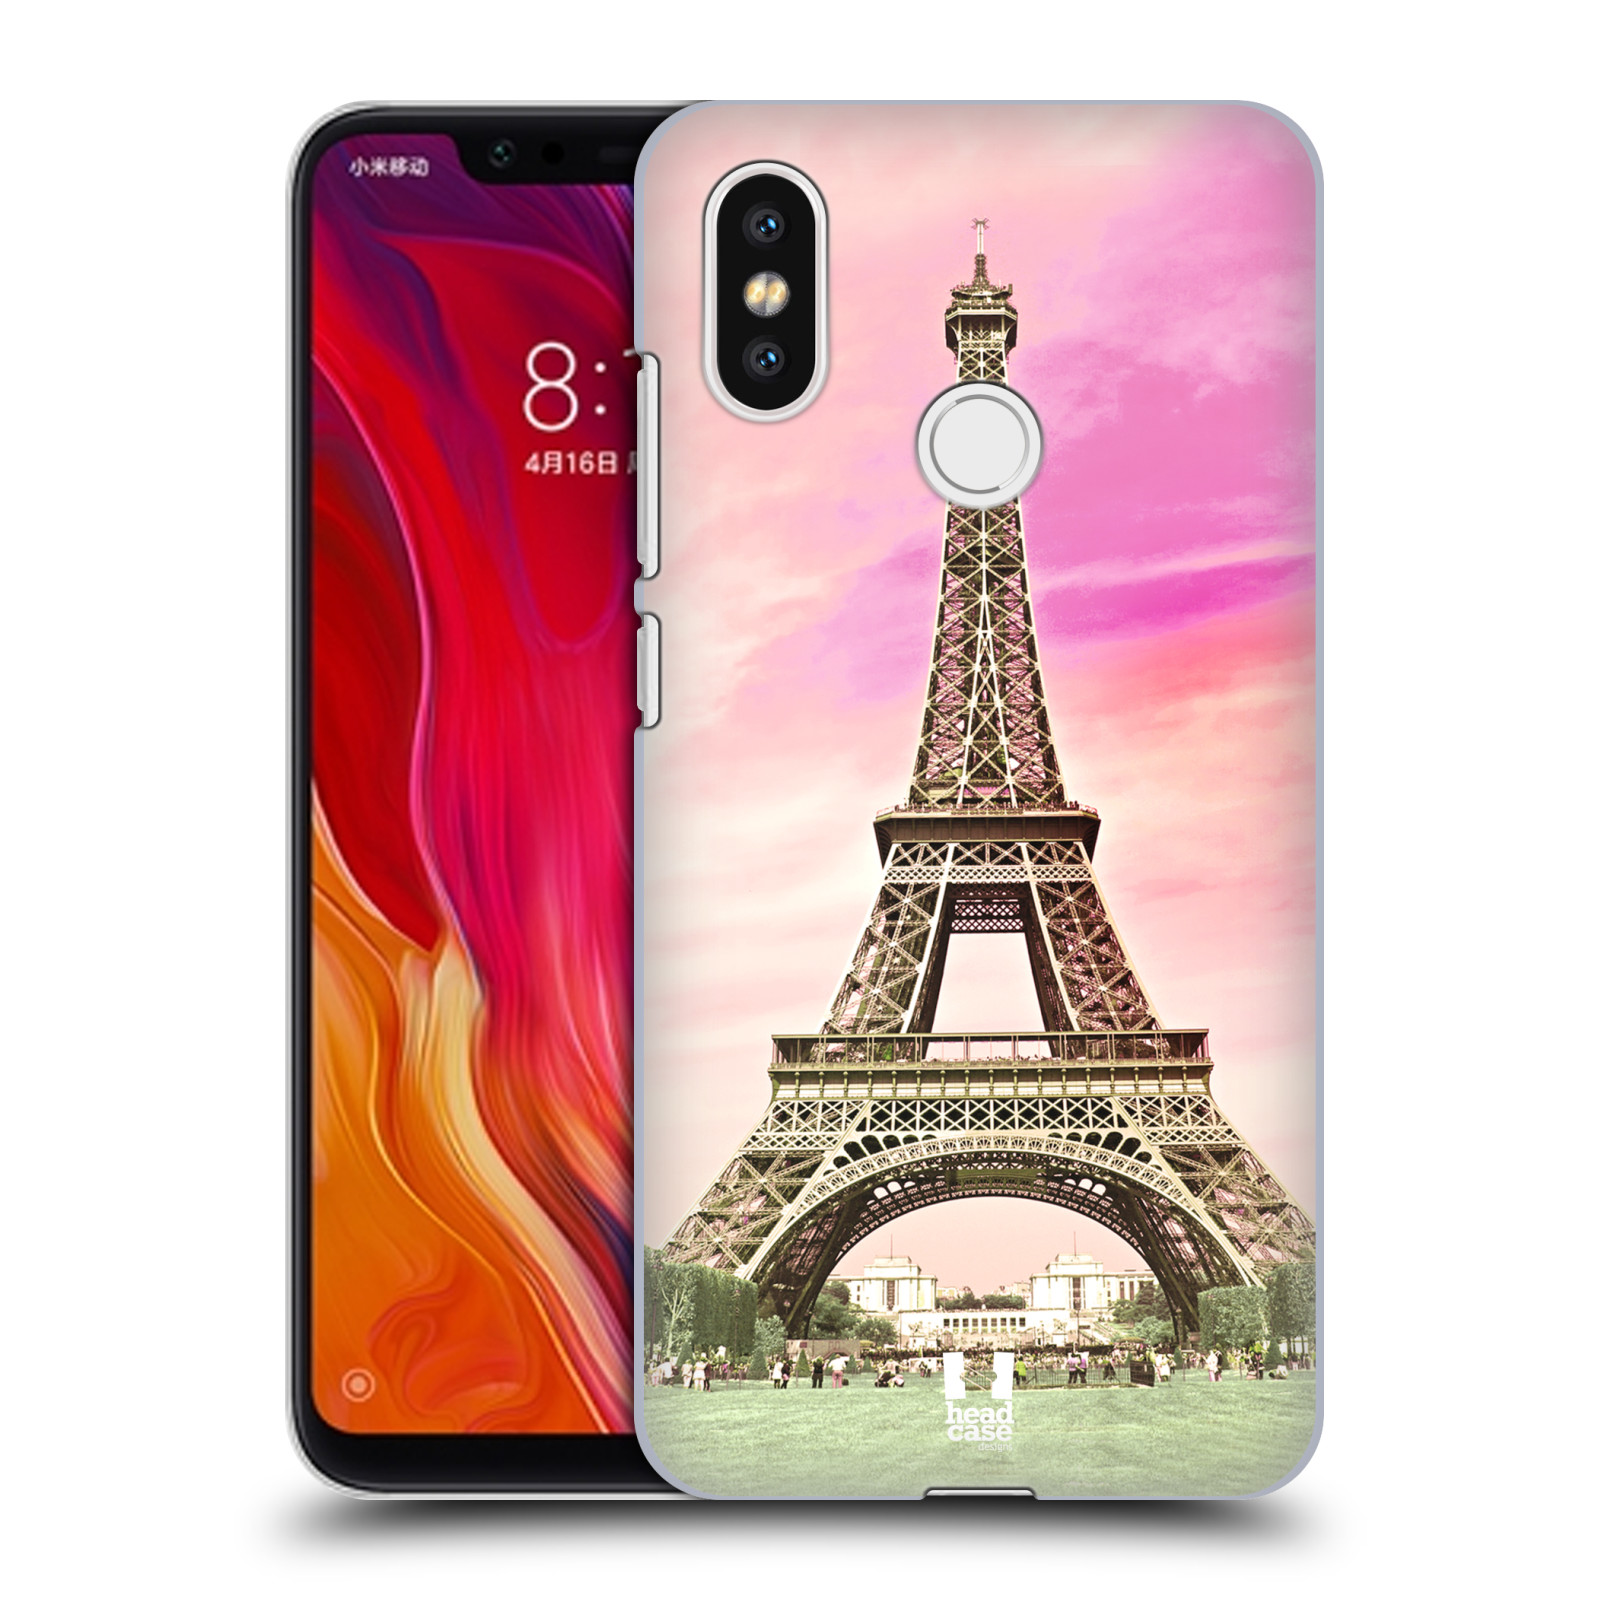 Pouzdro na mobil Xiaomi  Mi 8 - HEAD CASE - historická místa Eiffelova věž Paříž